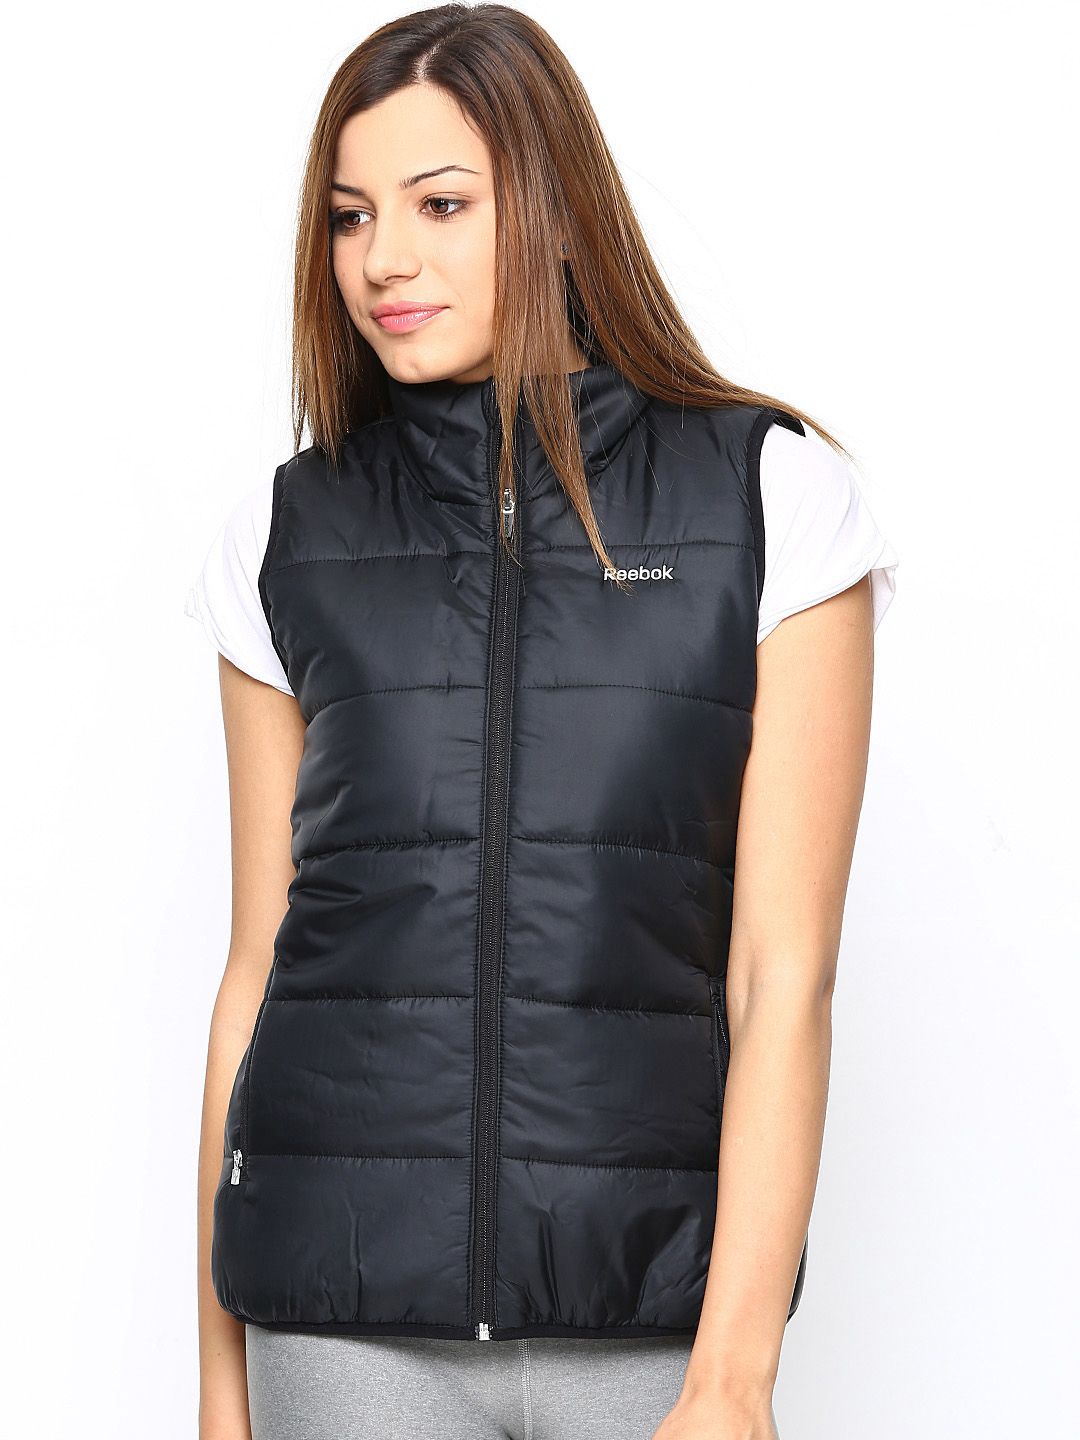 reebok womens vest